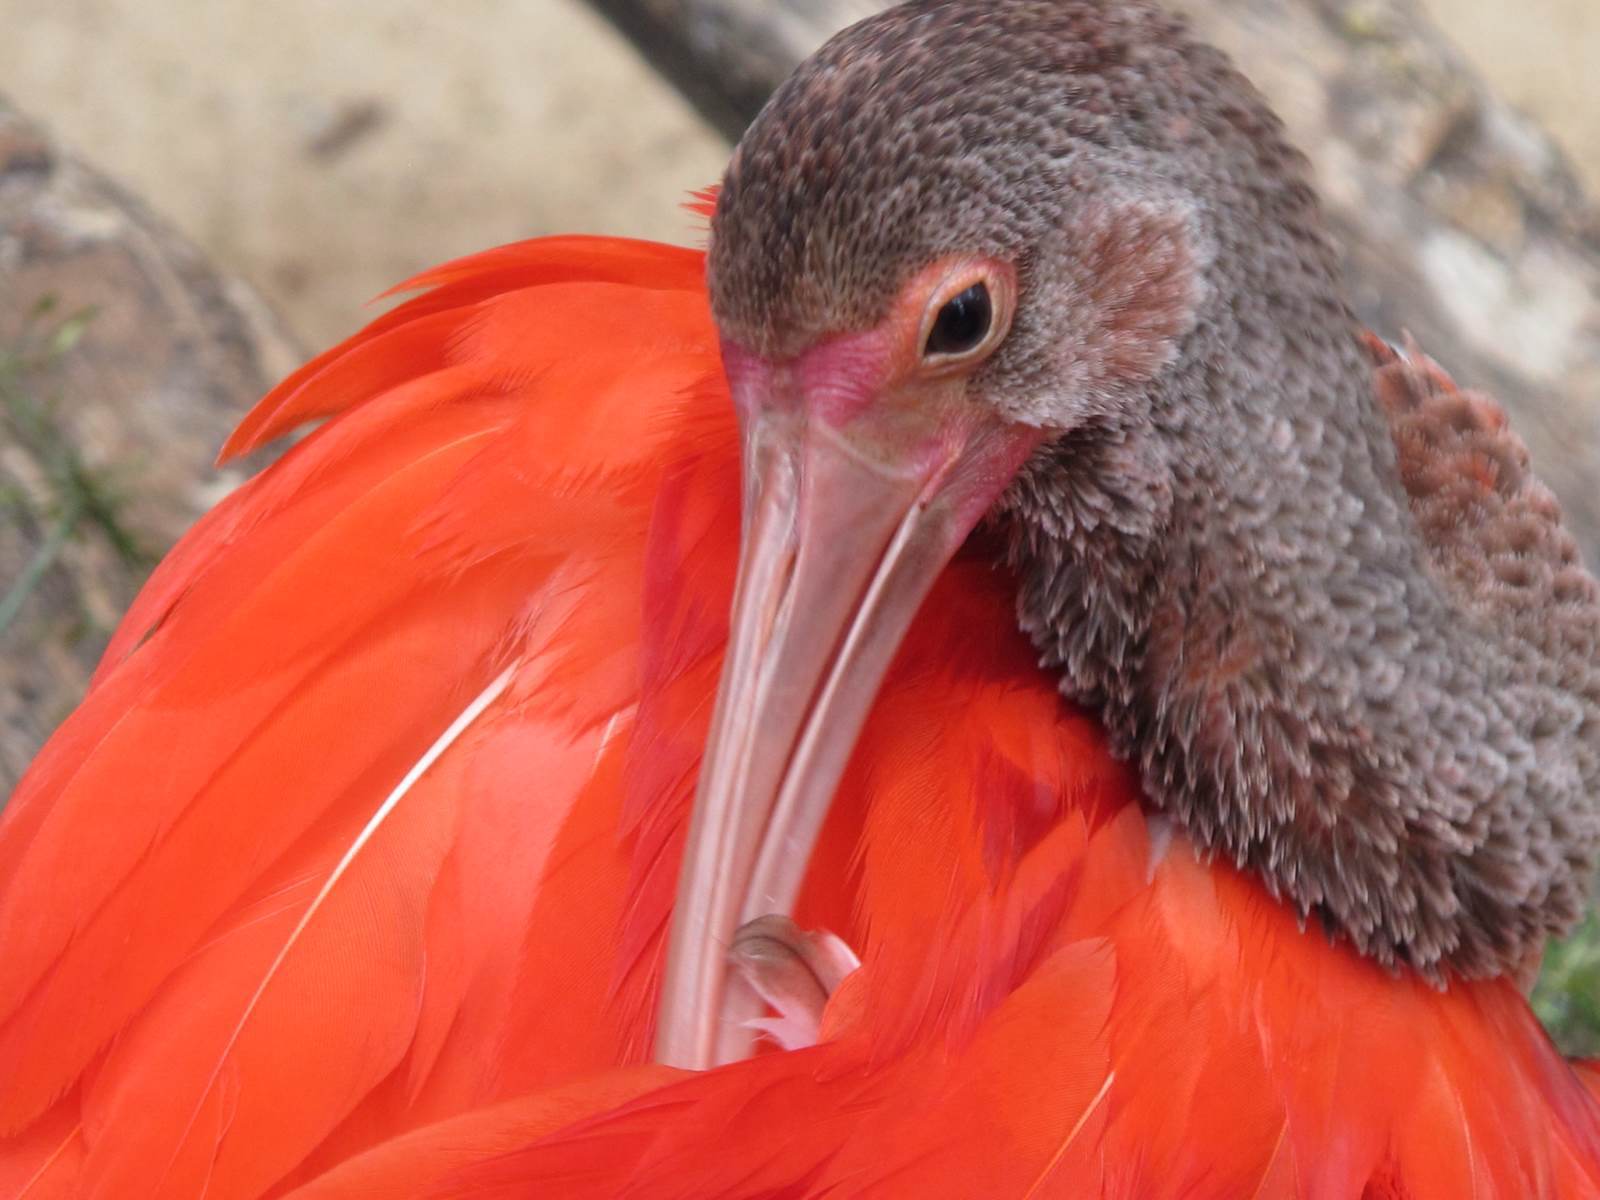 巴西伊瓜苏热带雨林中保护的各种鸟类鹦鹉,金刚鹦鹉,燕鸥,新热带鸬鹚